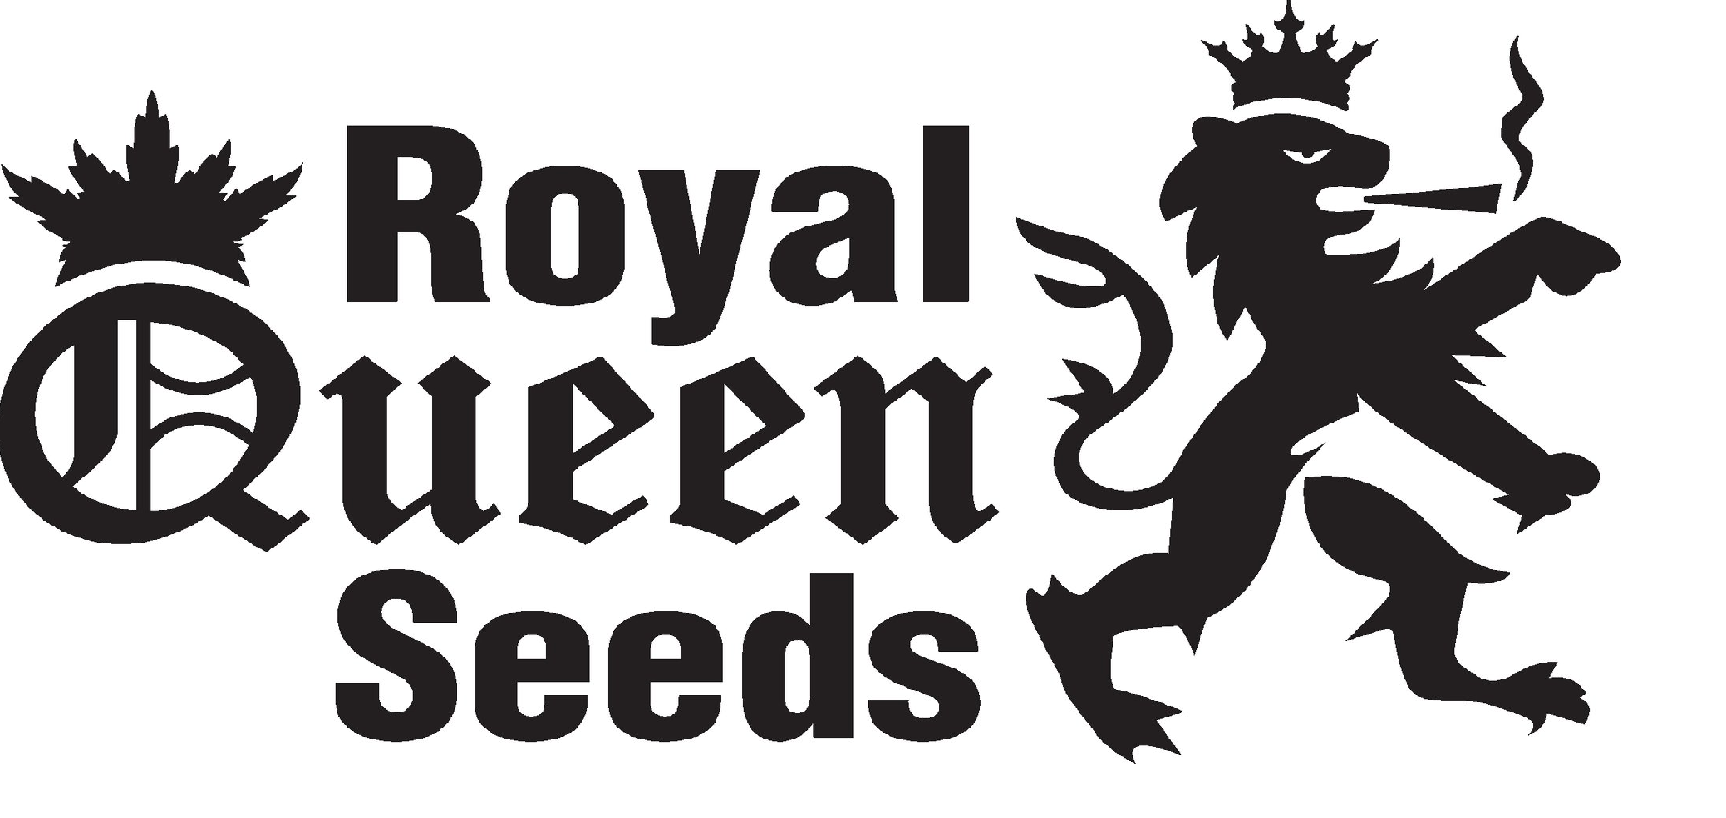 Royal Queen seeds